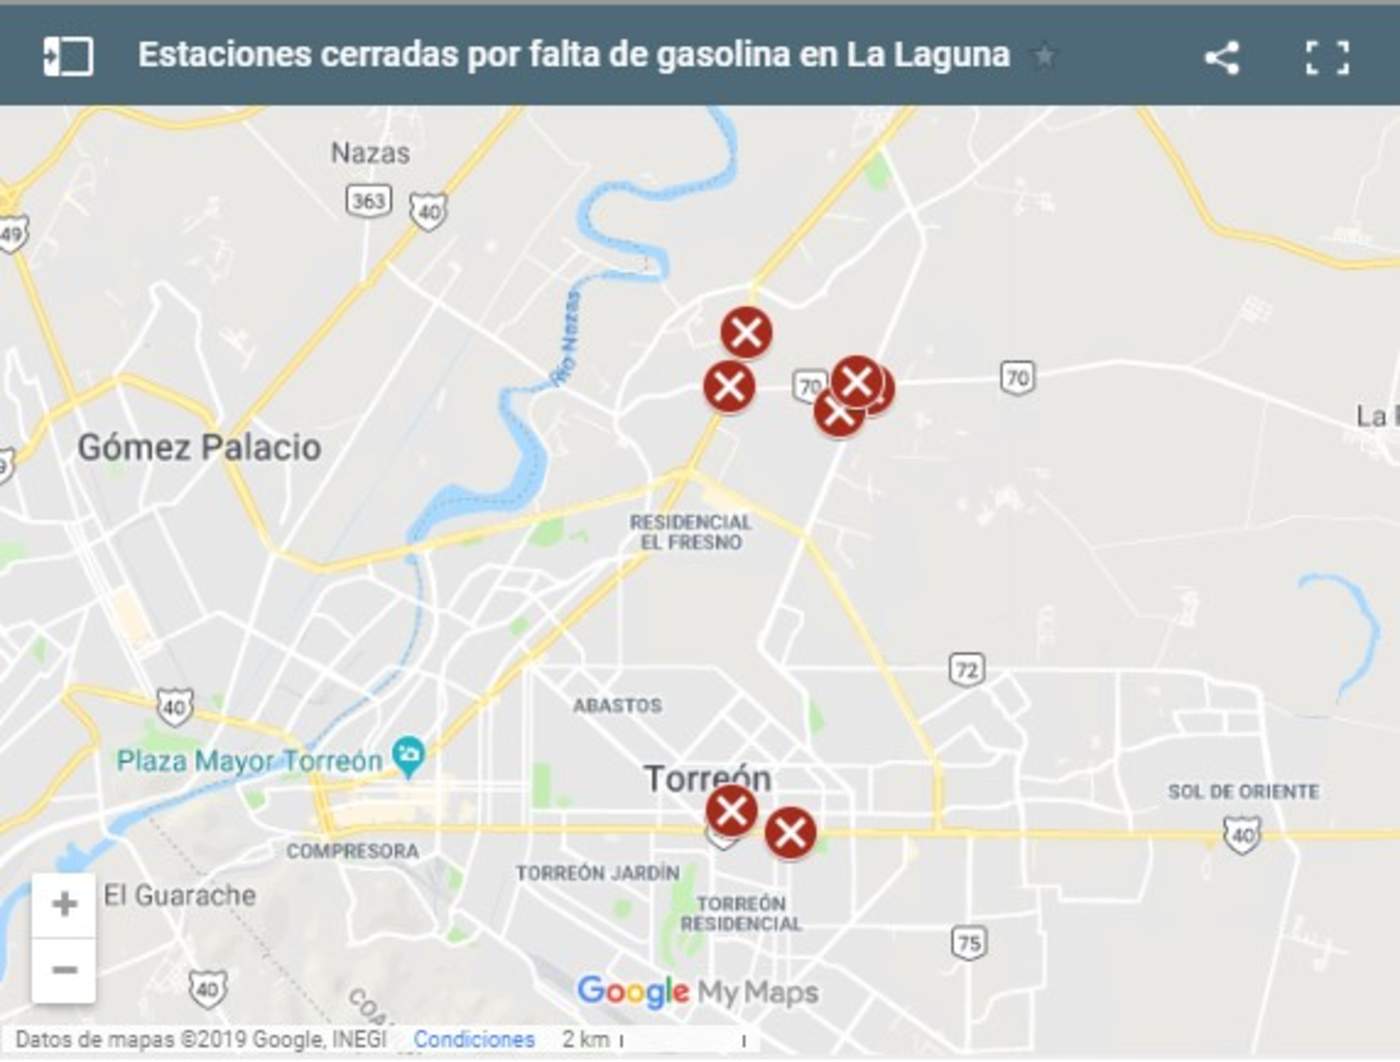 Mapa de gasolineras cerradas por falta de combustible en La Laguna